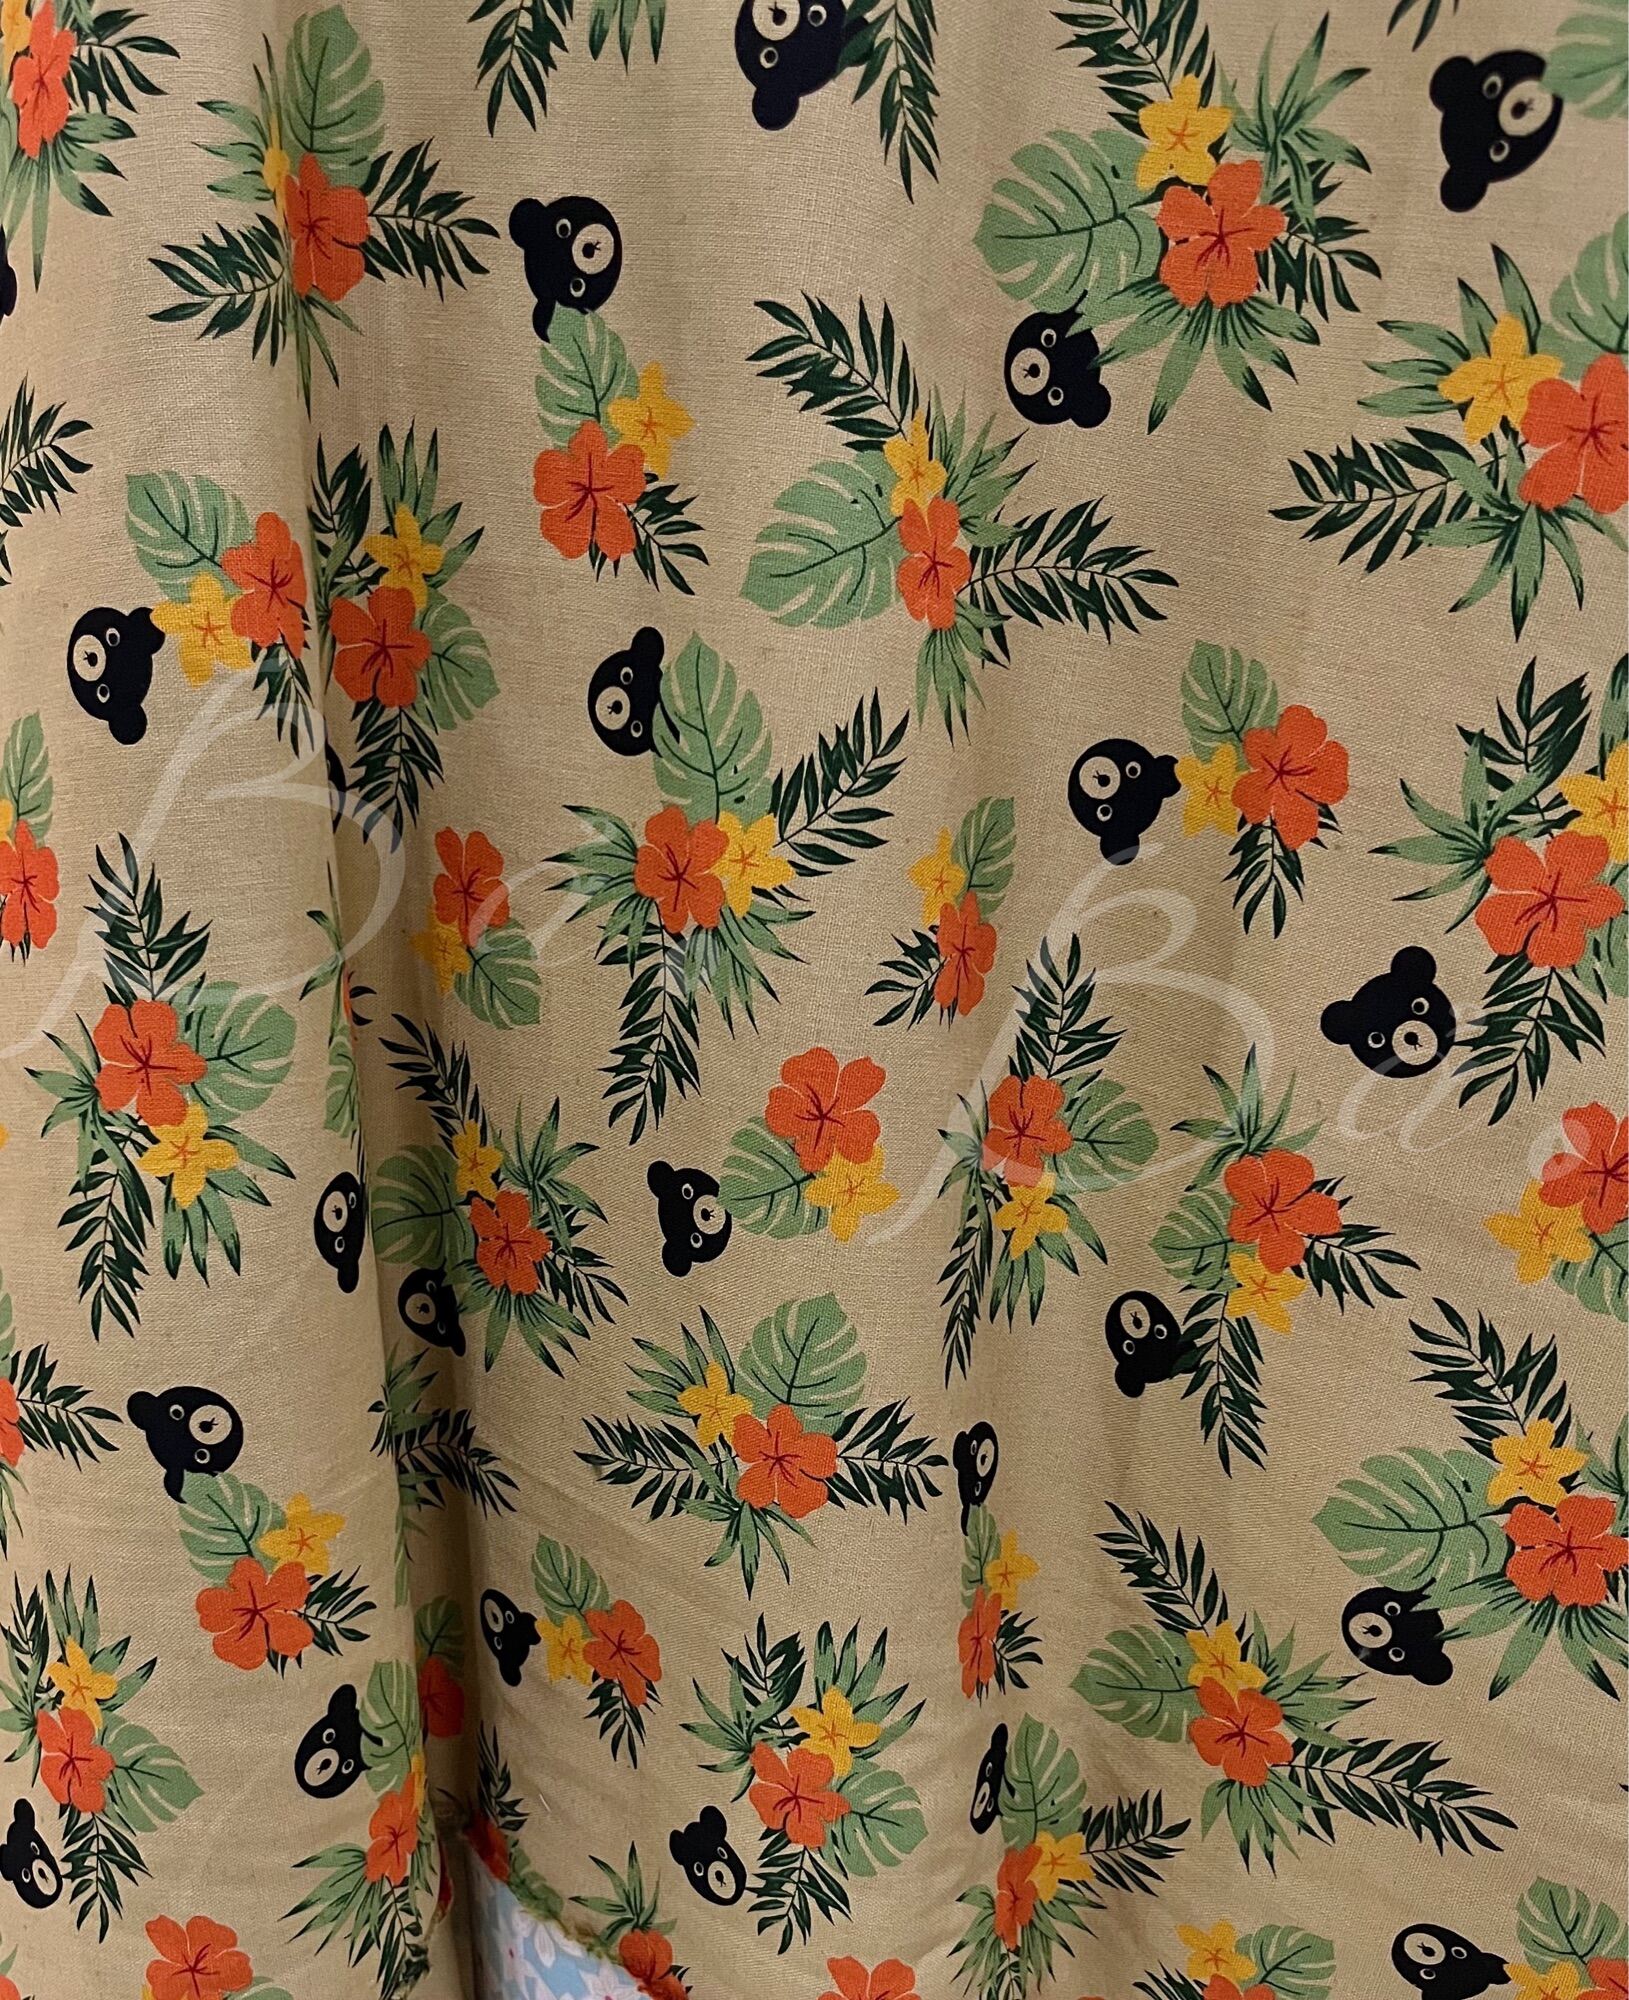 Vải Linen Bố Bột In Hoạ Tiết Màu Vintage Kiện Nhật Dày Dặn Khổ 1m10